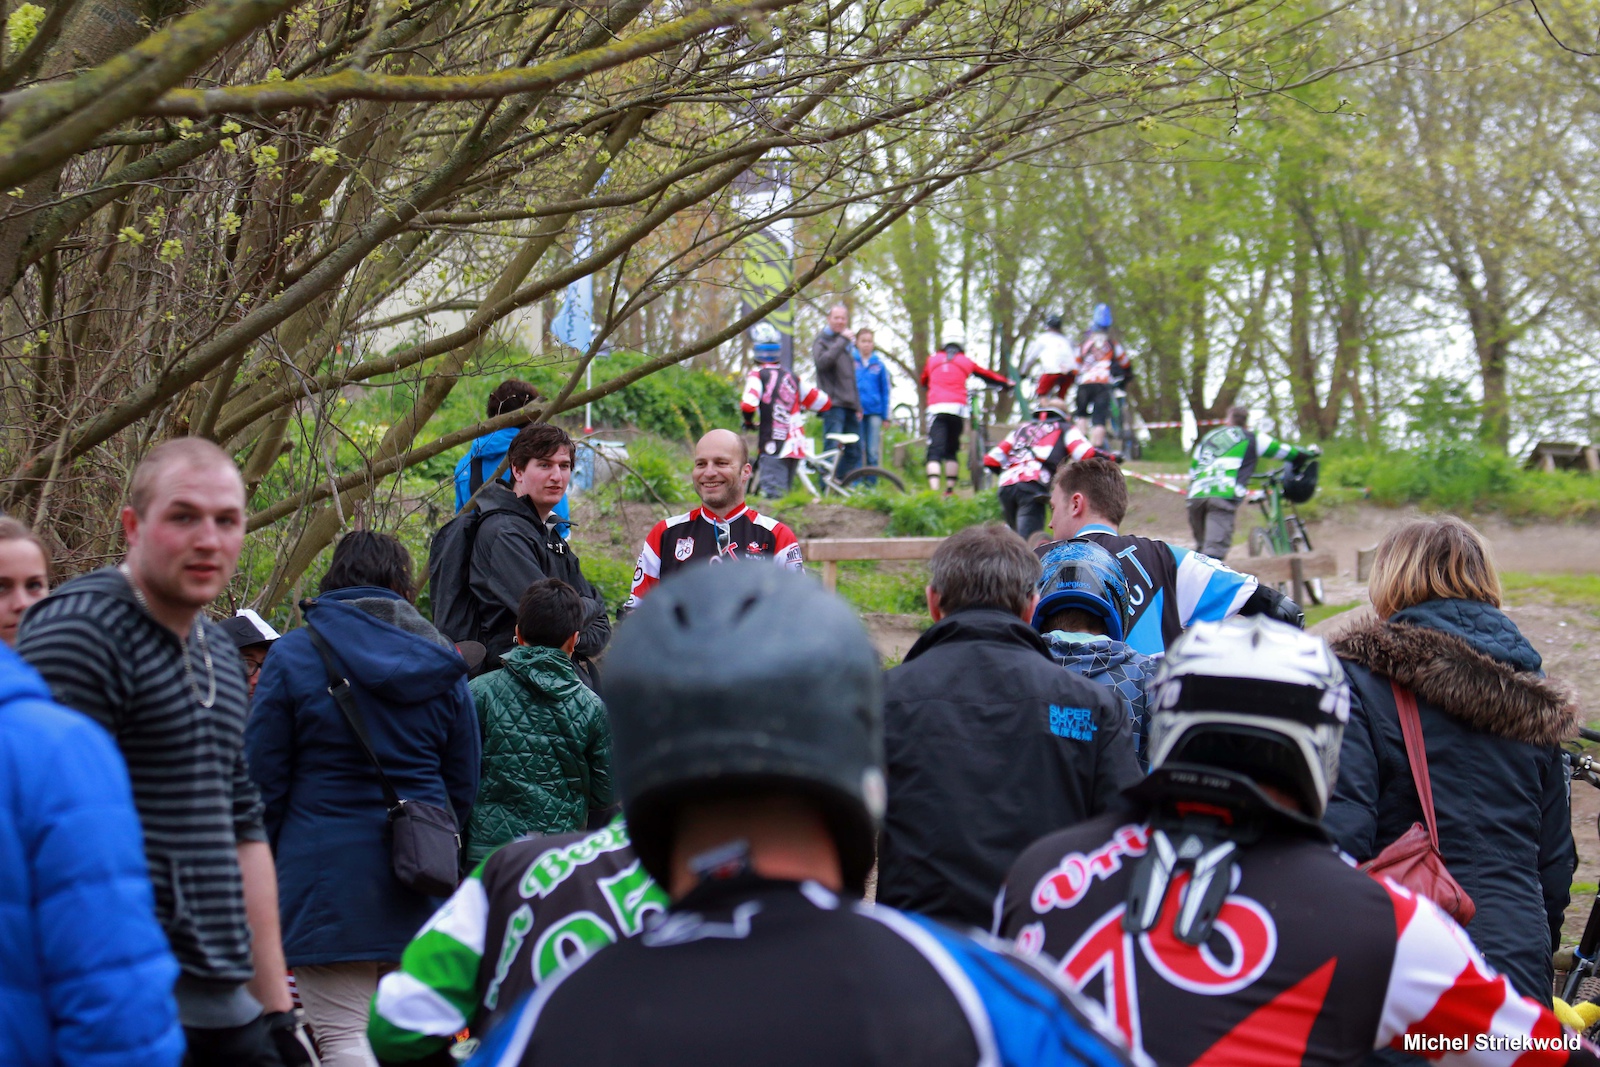 Bikepark Spaarnwoude Opening 03-05-2015